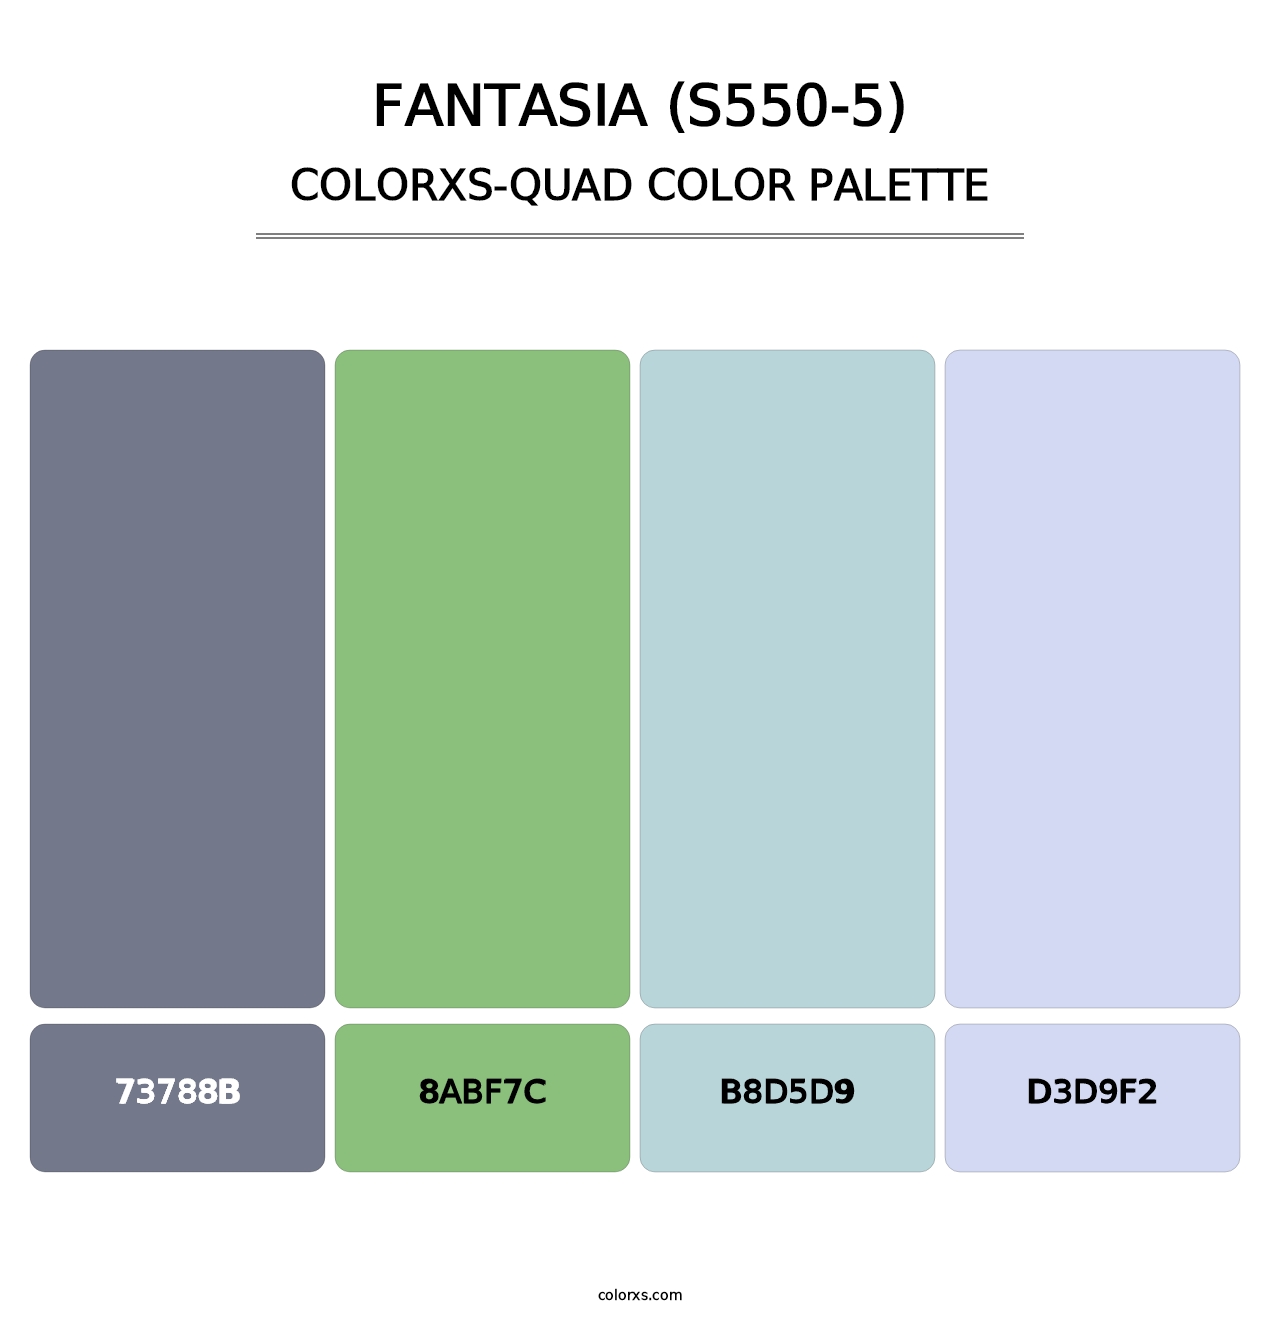 Fantasia (S550-5) - Colorxs Quad Palette